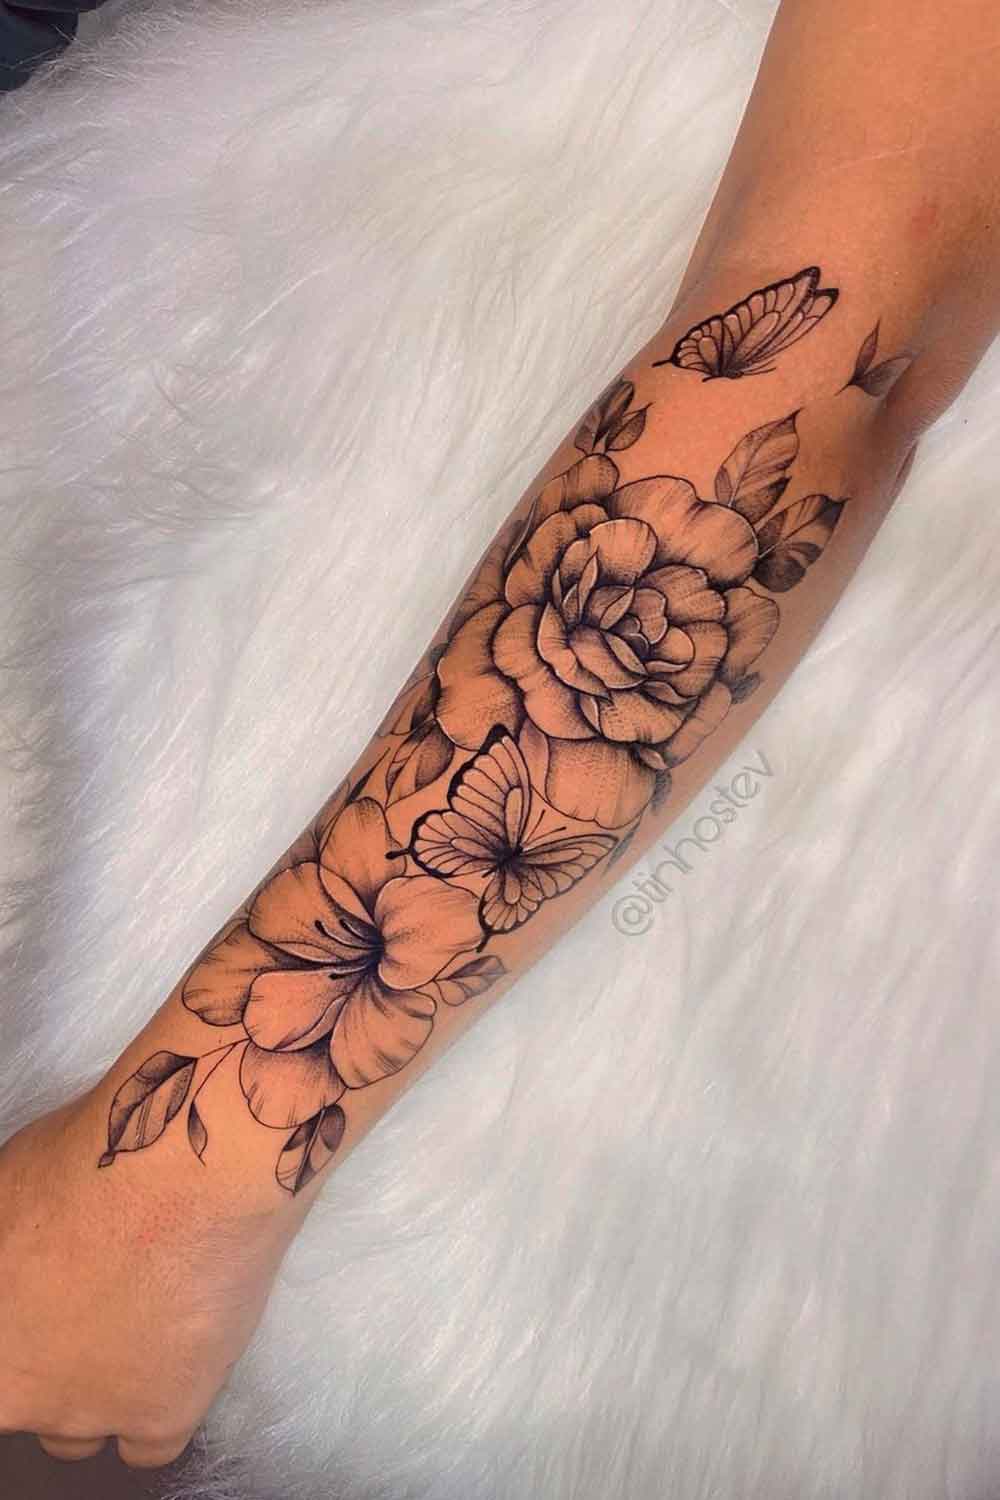 tatuagem-feminina-floral-com-borboleta-no-antebraco 